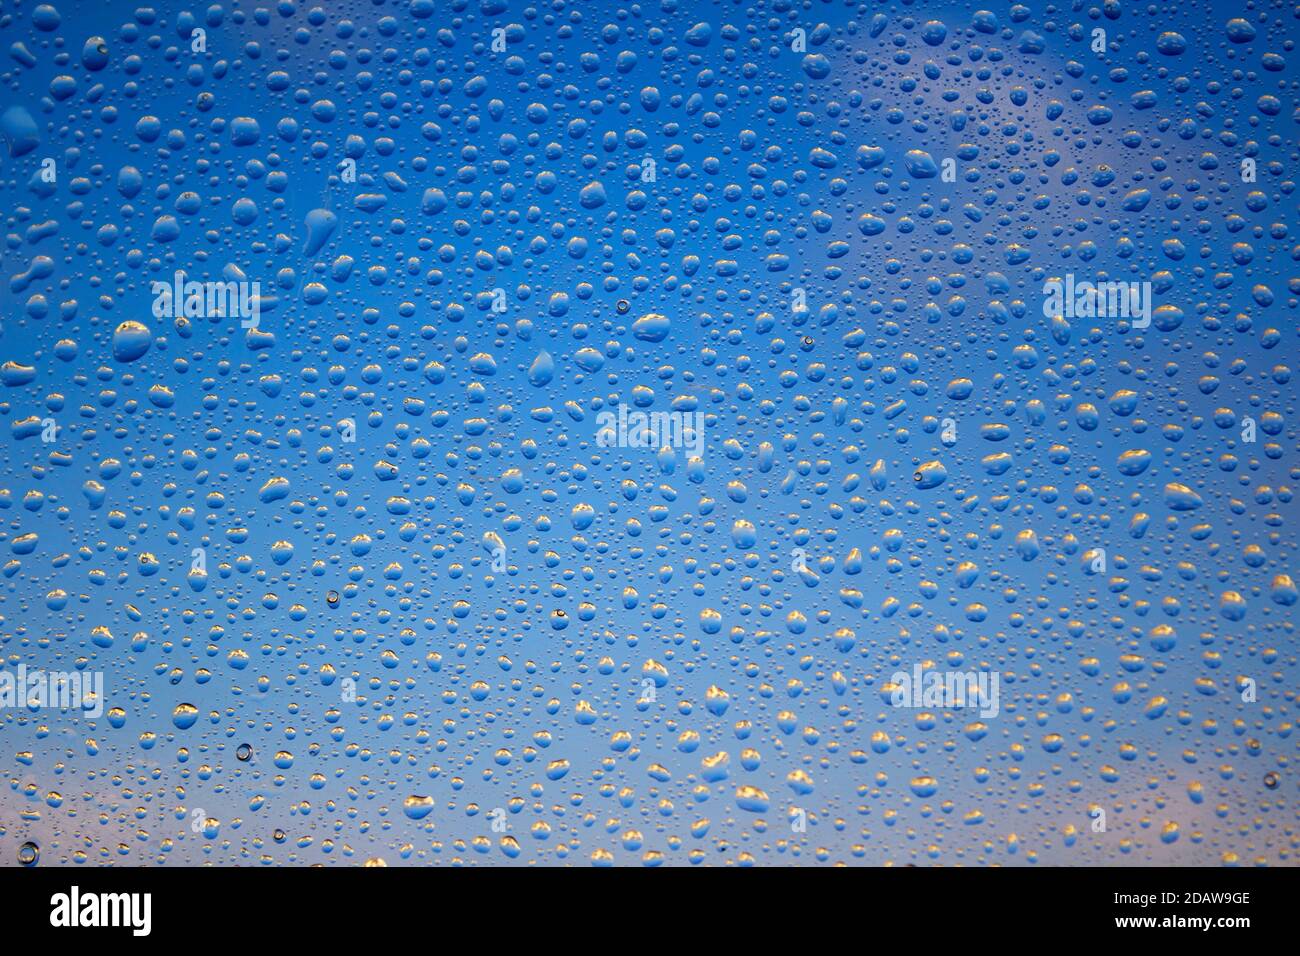 La pluie tombe sur une fenêtre. Motif abstrait naturel. Fond bleu ciel. Mise au point sélective. Banque D'Images